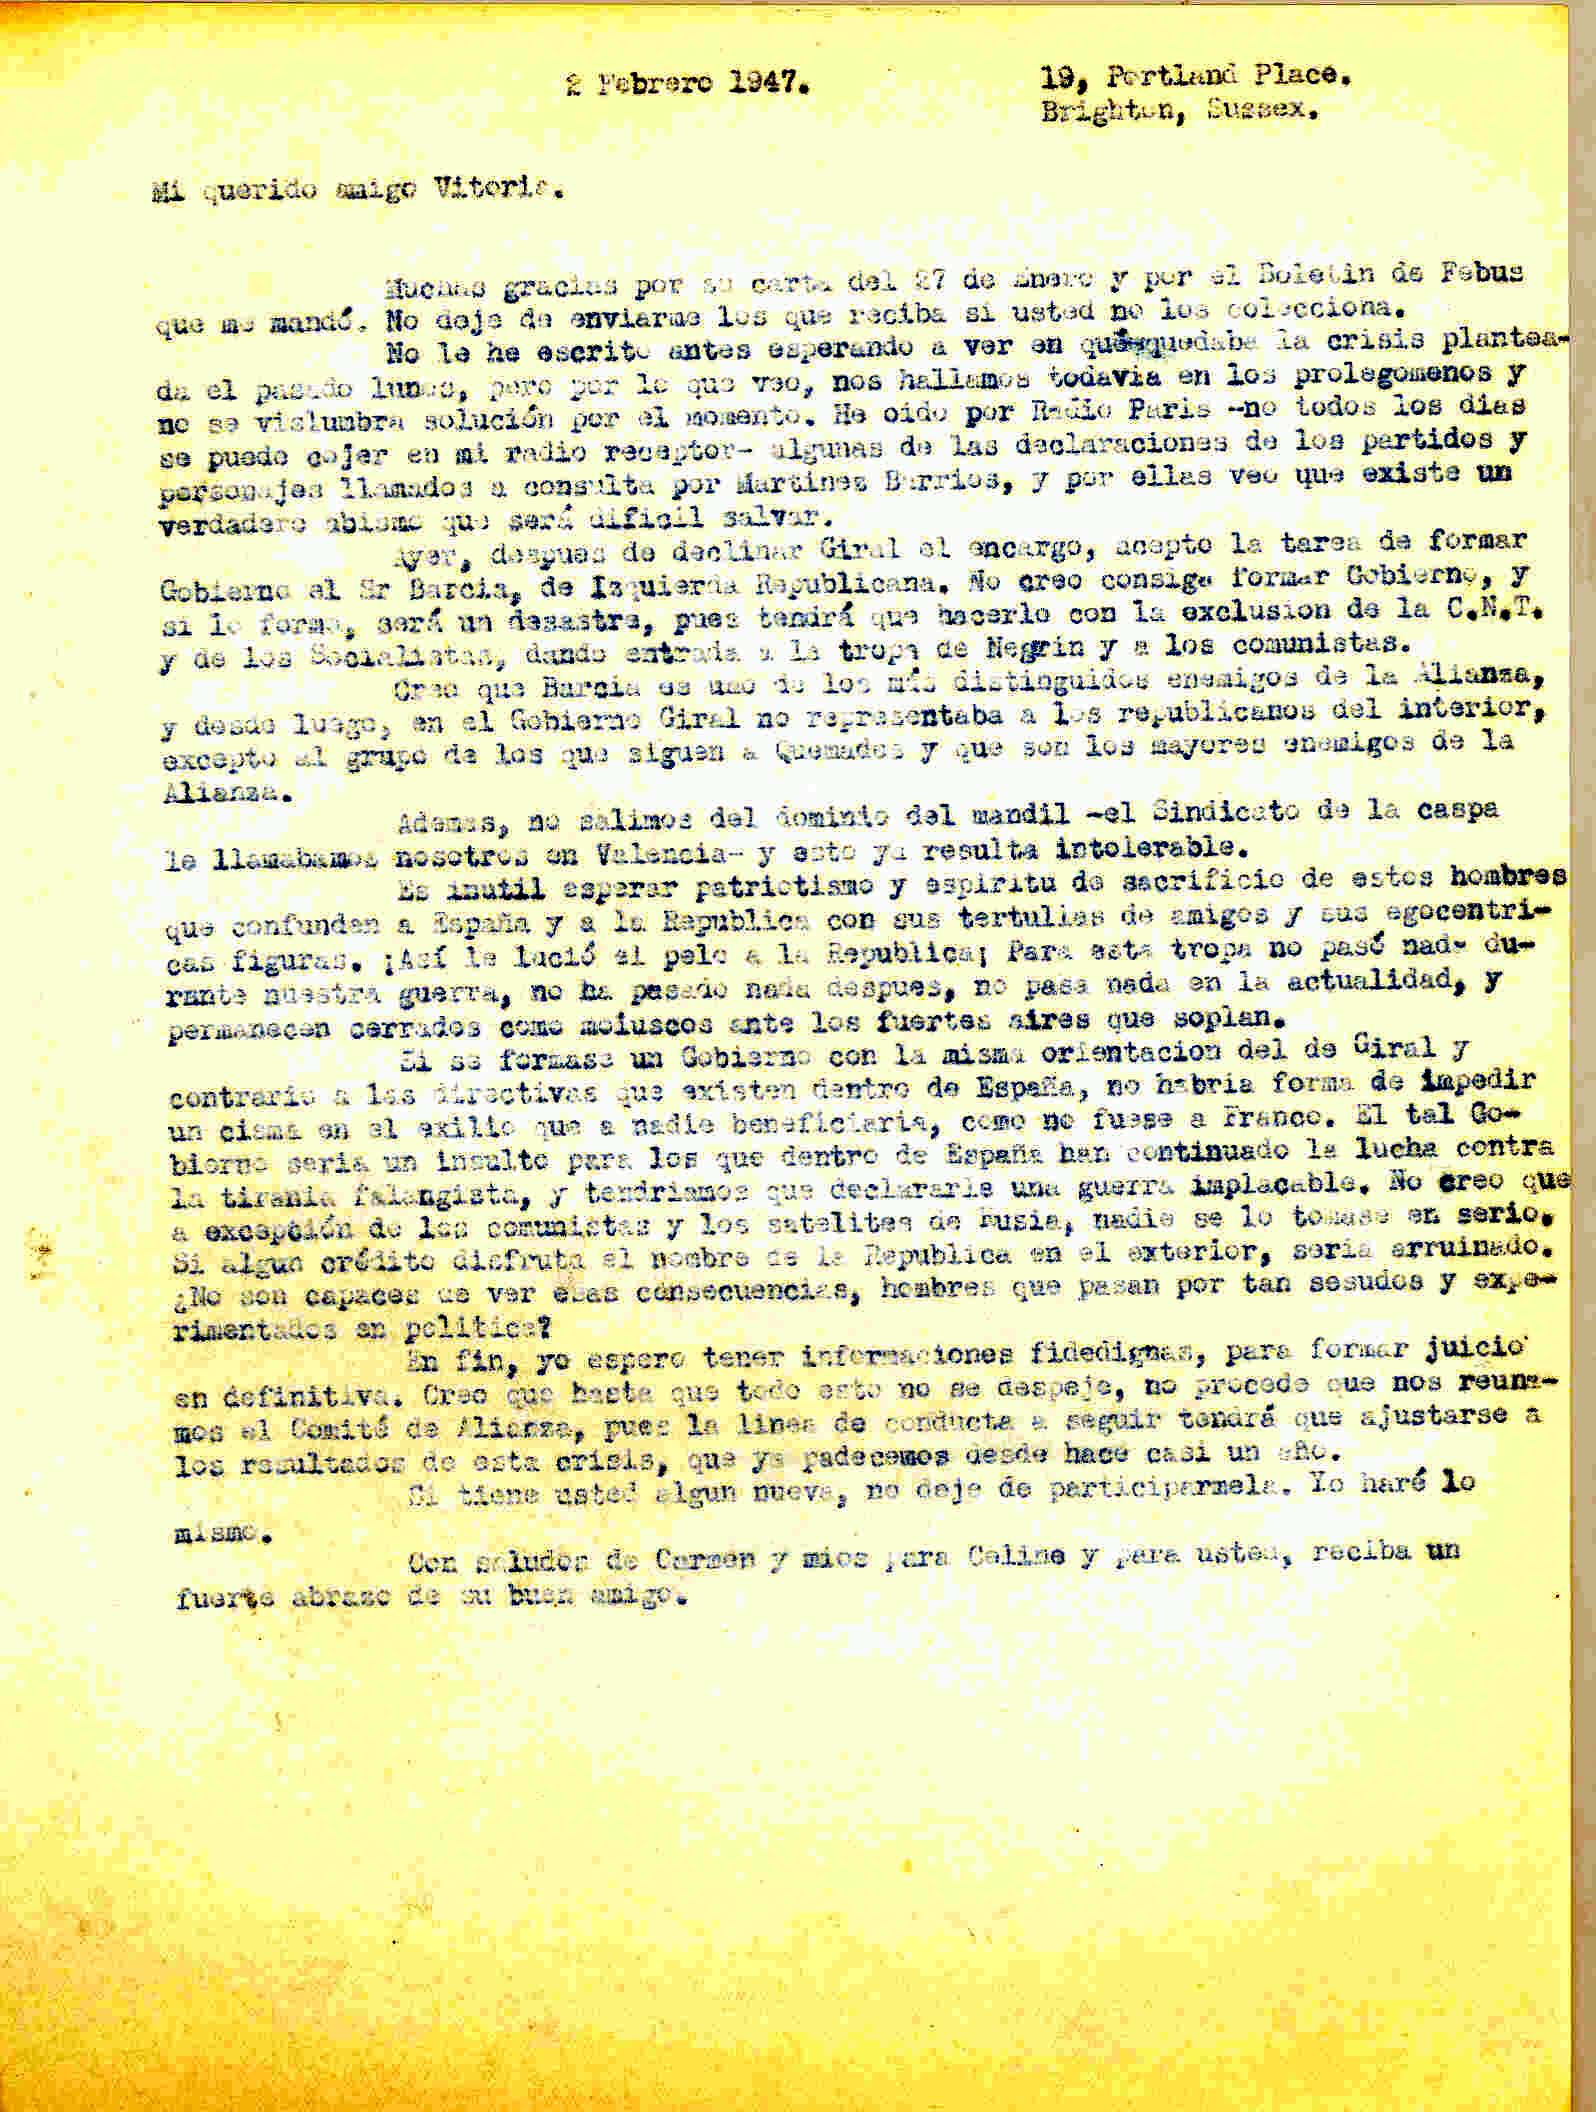 Carta a Roque Victoria en la que cuenta que el Sr Barcia (de izquierda republicana) aceptó formar gobierno, si lo formara sería un desastre pues sería con la exclusión de CNT y de los socialistas, dando entrada a Negrín y a los comunistas.